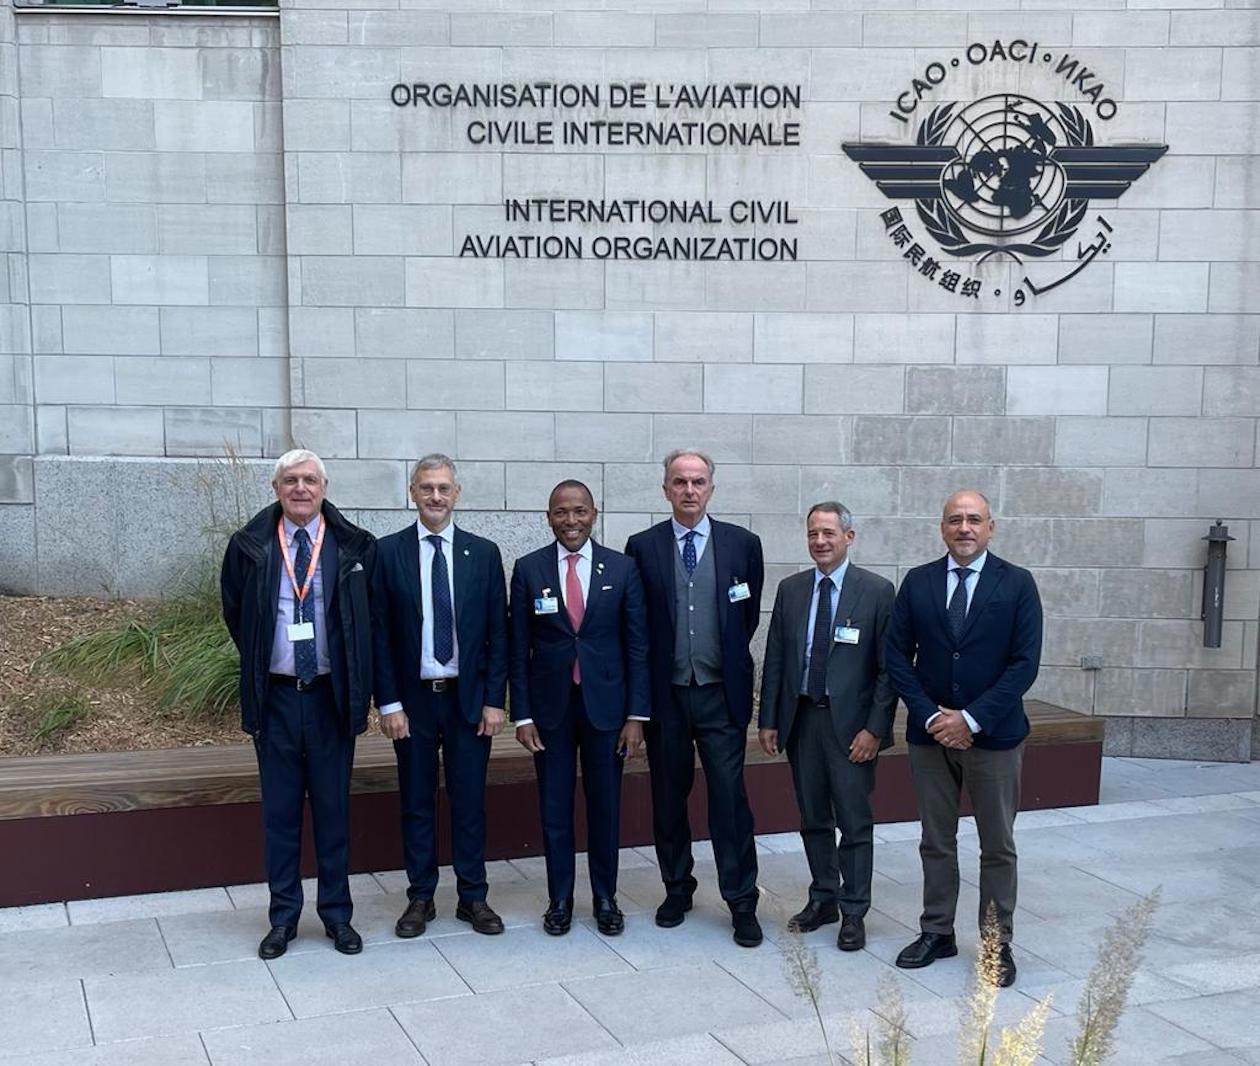 Eminente, Di Antonio, Nolen (FAA), Di Palma (Presidente ENAC), Costantini, Trombetti